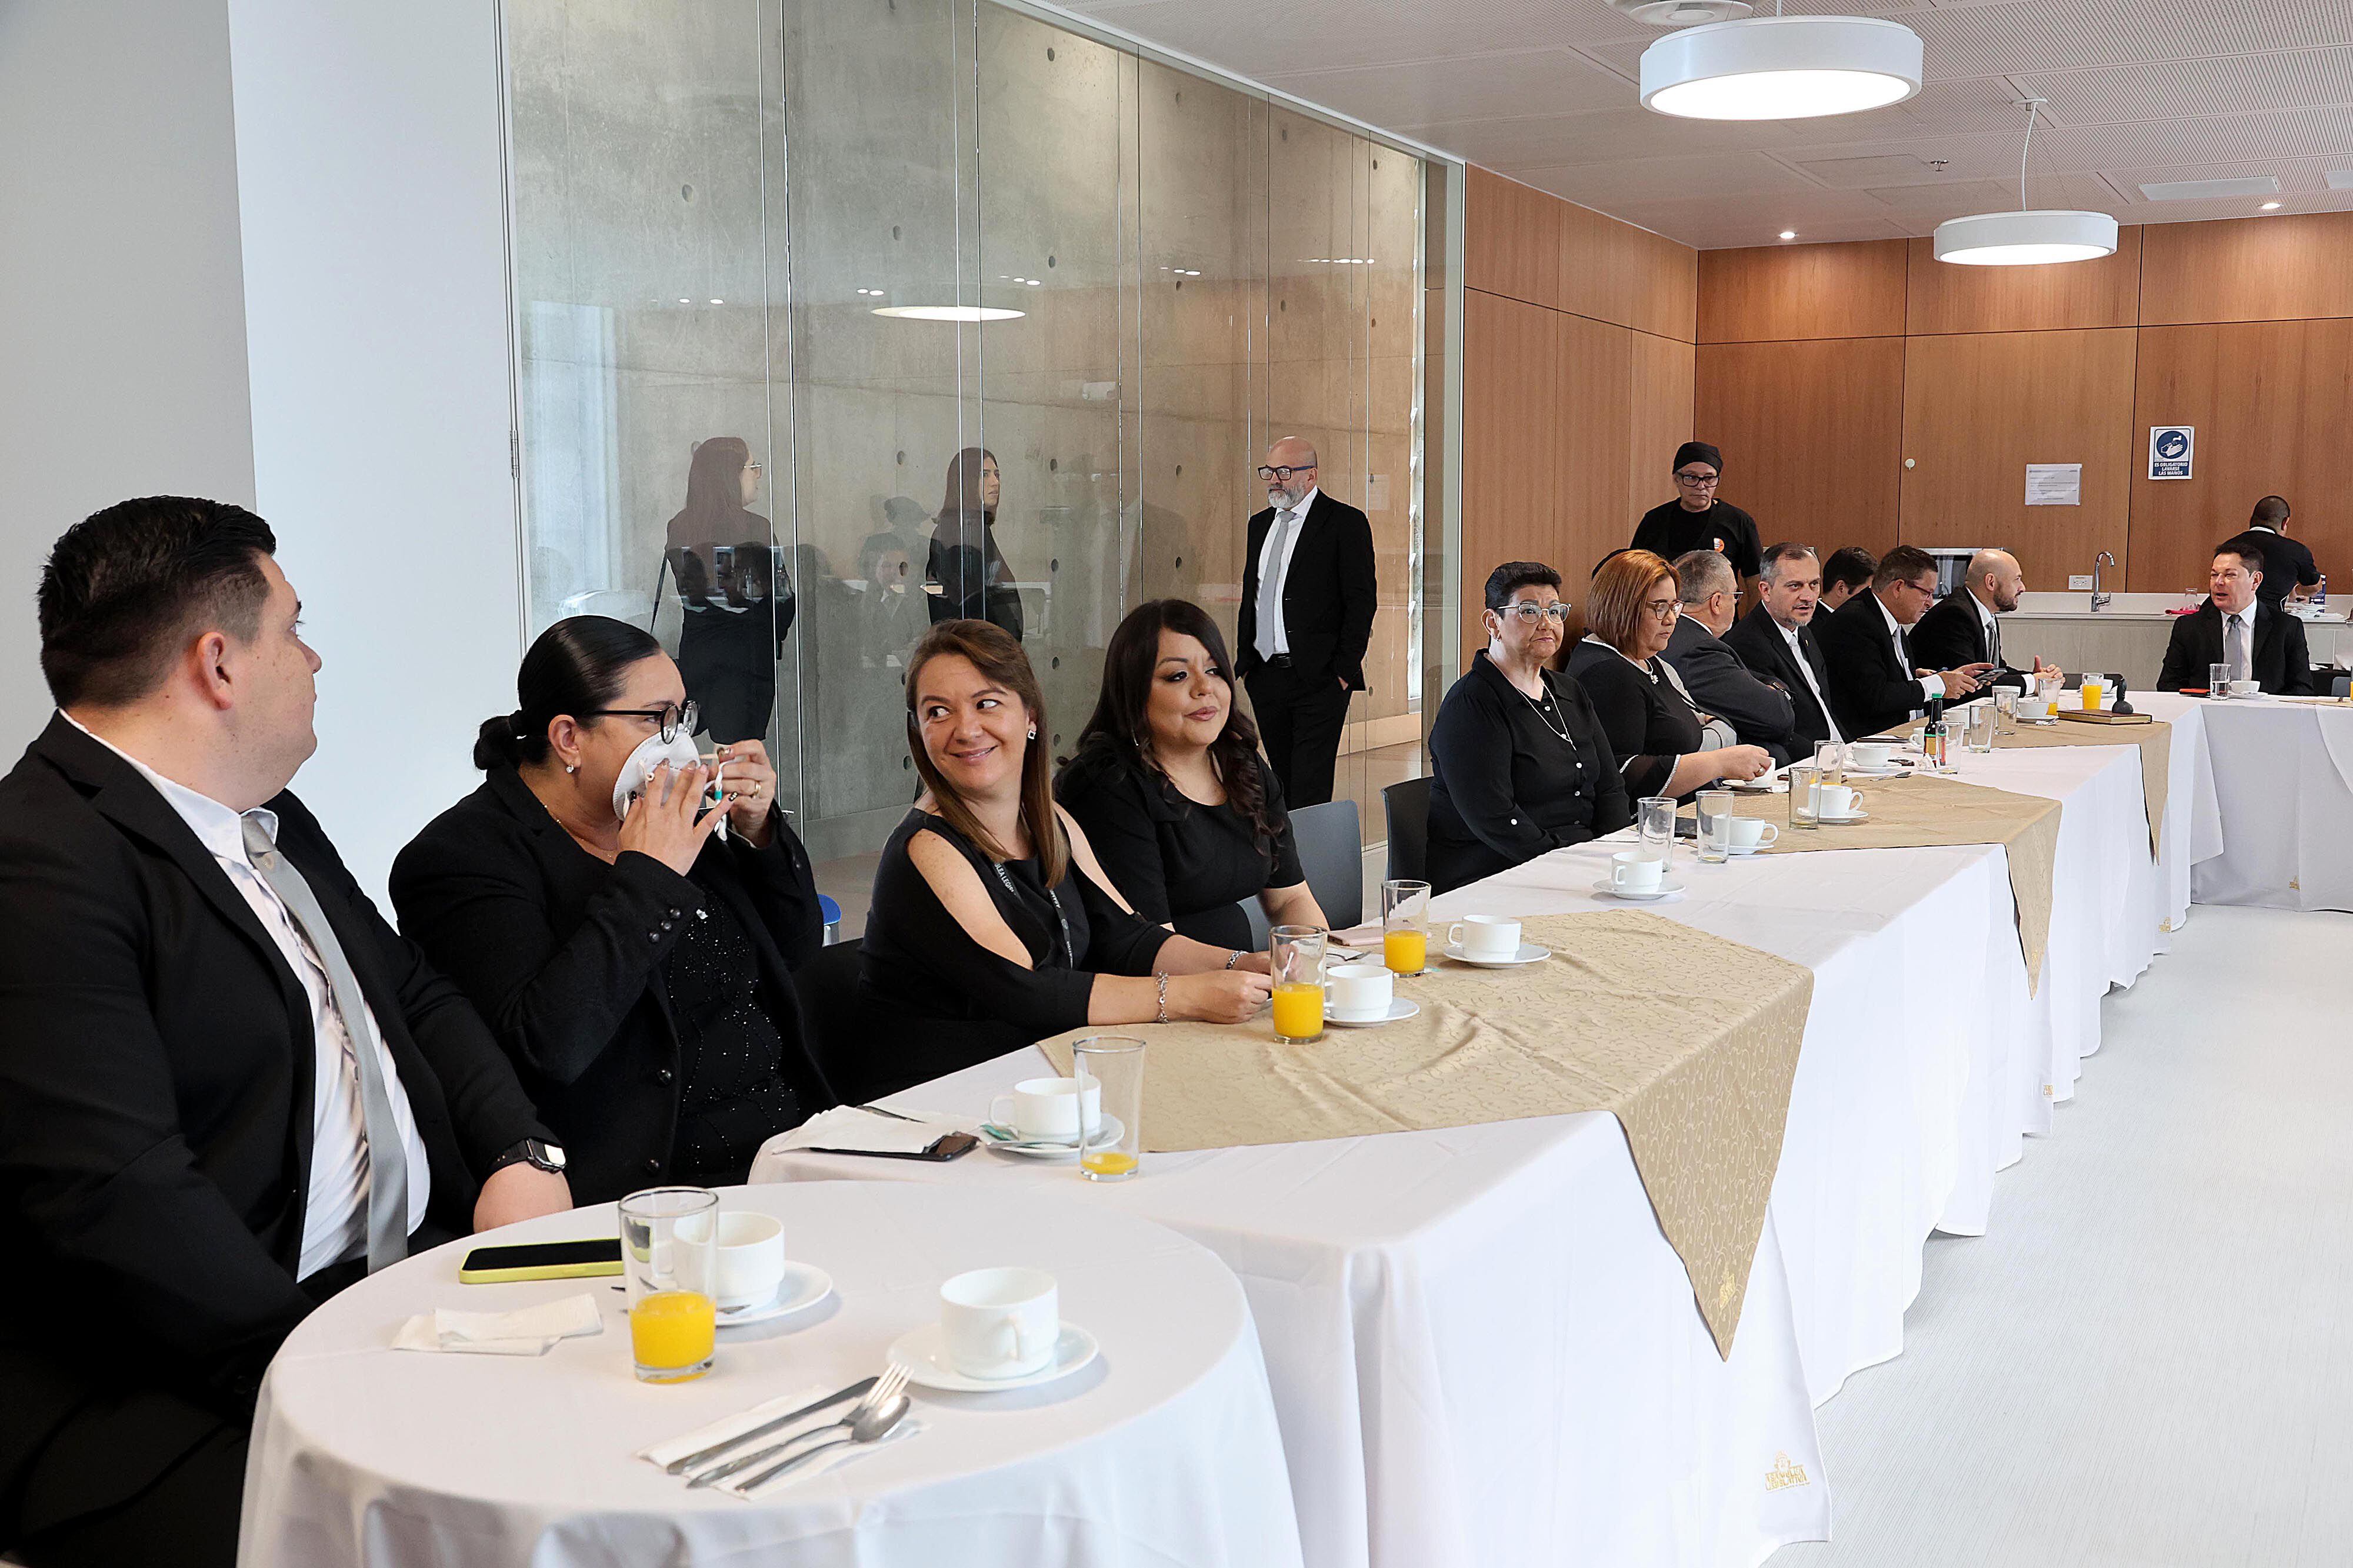 Ocho diputados de la fracción oficialista de Progreso Social Democrático realizaron un desayuno grupal, al cual asistieron junto a sus familias. La única ausente fue Luz Mary Alpízar.